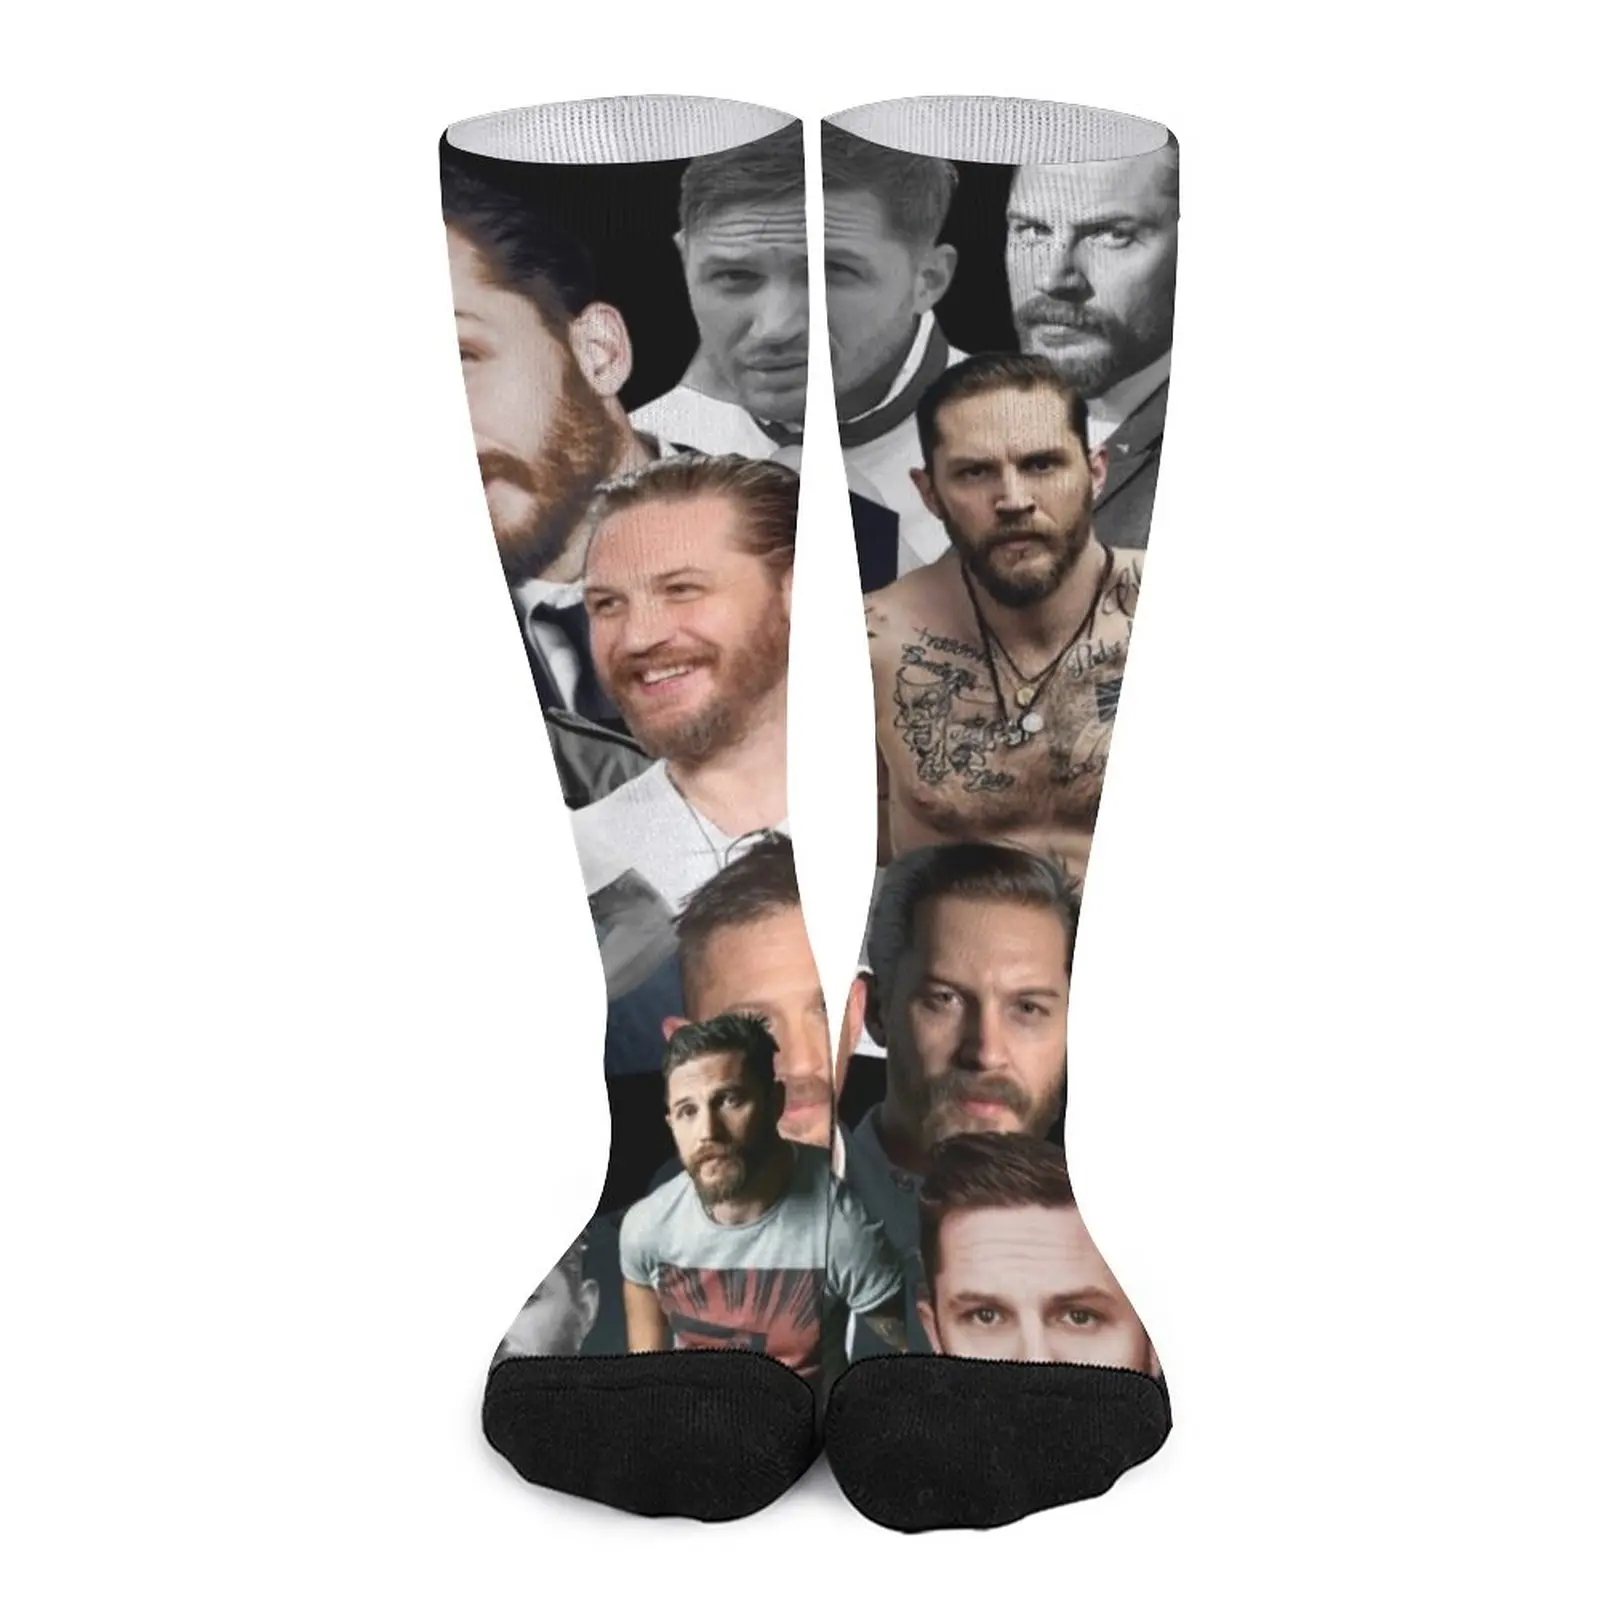 tom hardy photo collage Socks Sports socks socks for men Lots ed westwick photo collage socks men s sports socks black socks